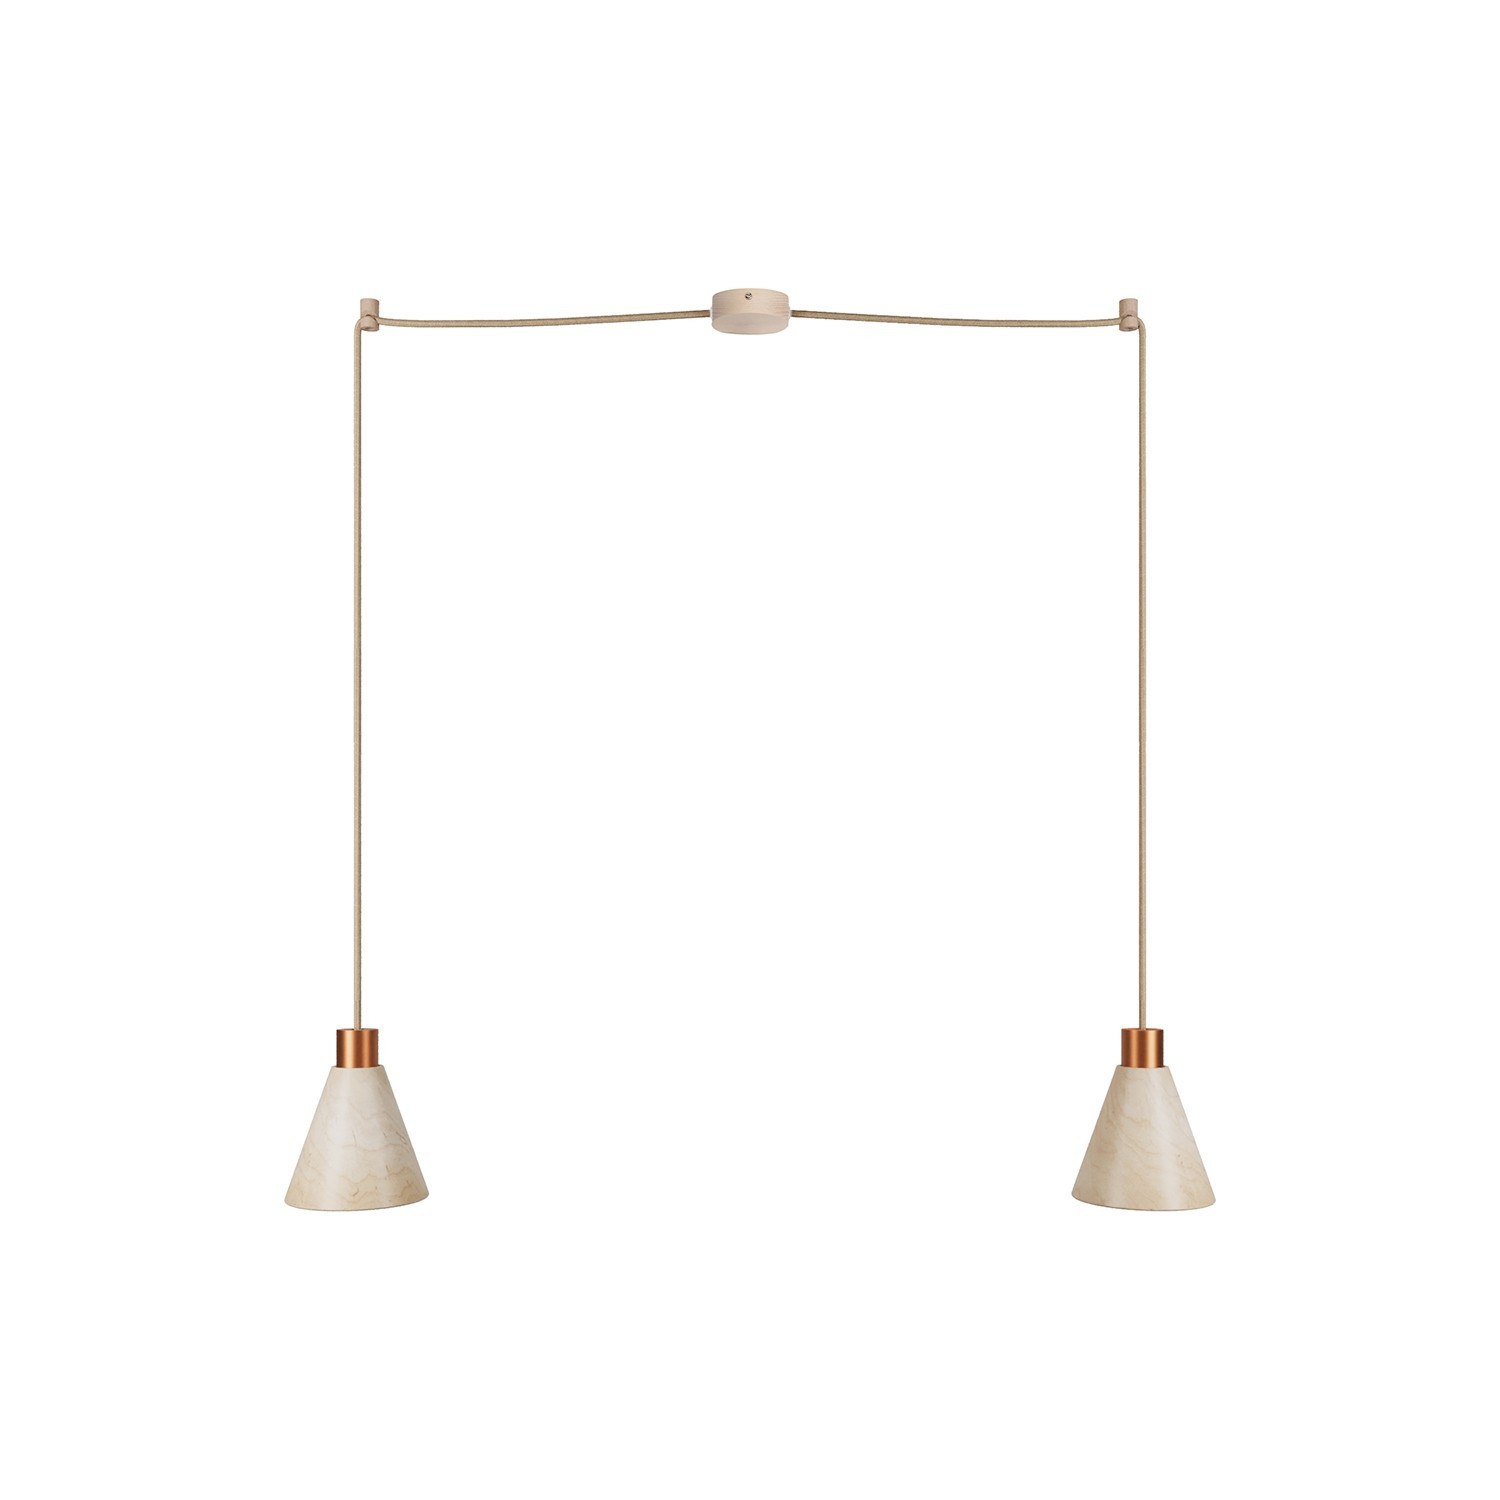 Pendelleuchte mit 2 Aufhängungen und kegelförmigen Lampenschirmen aus Holz